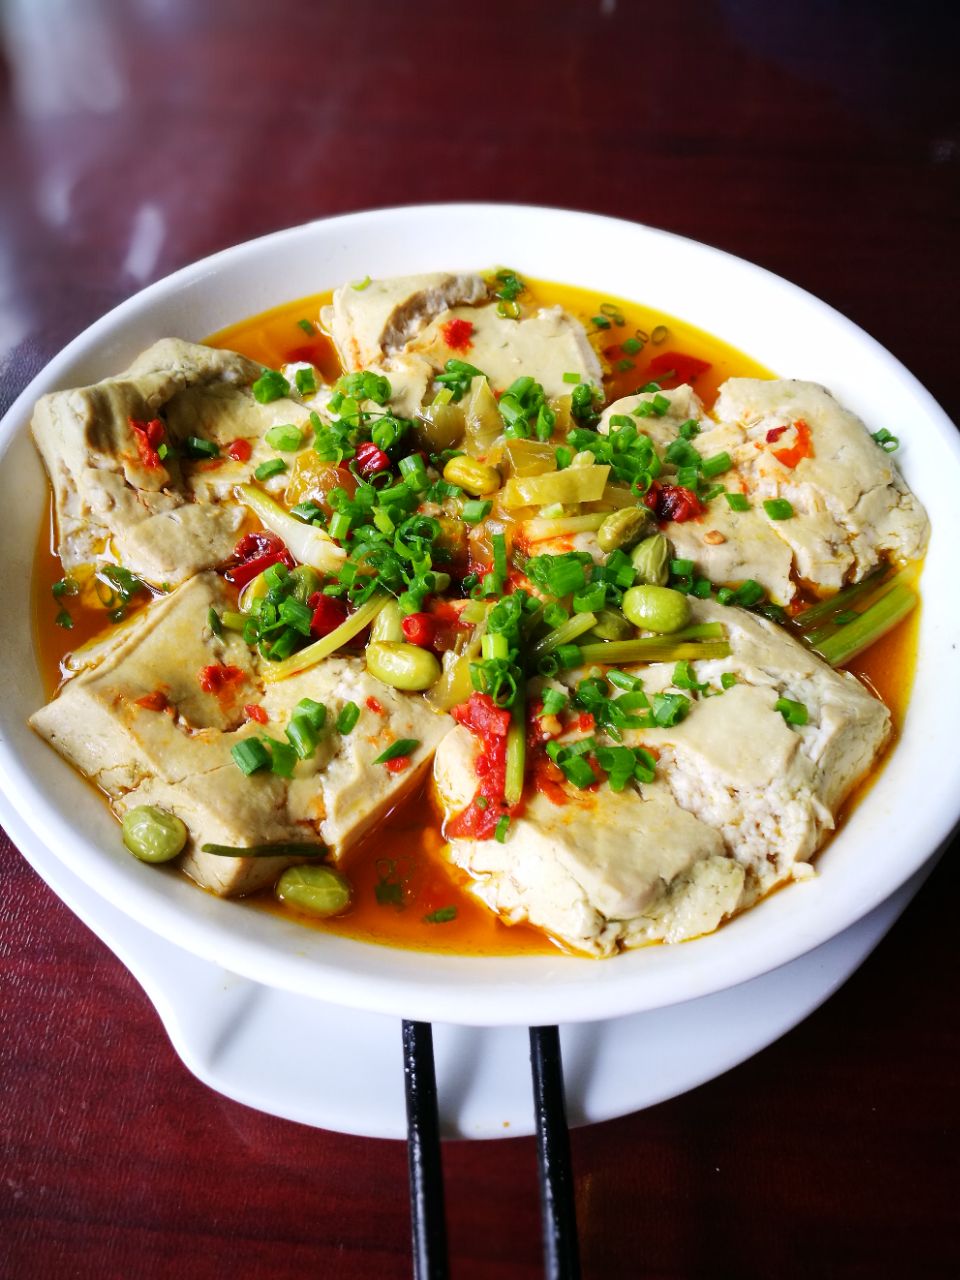 杭州蒸臭豆腐图片